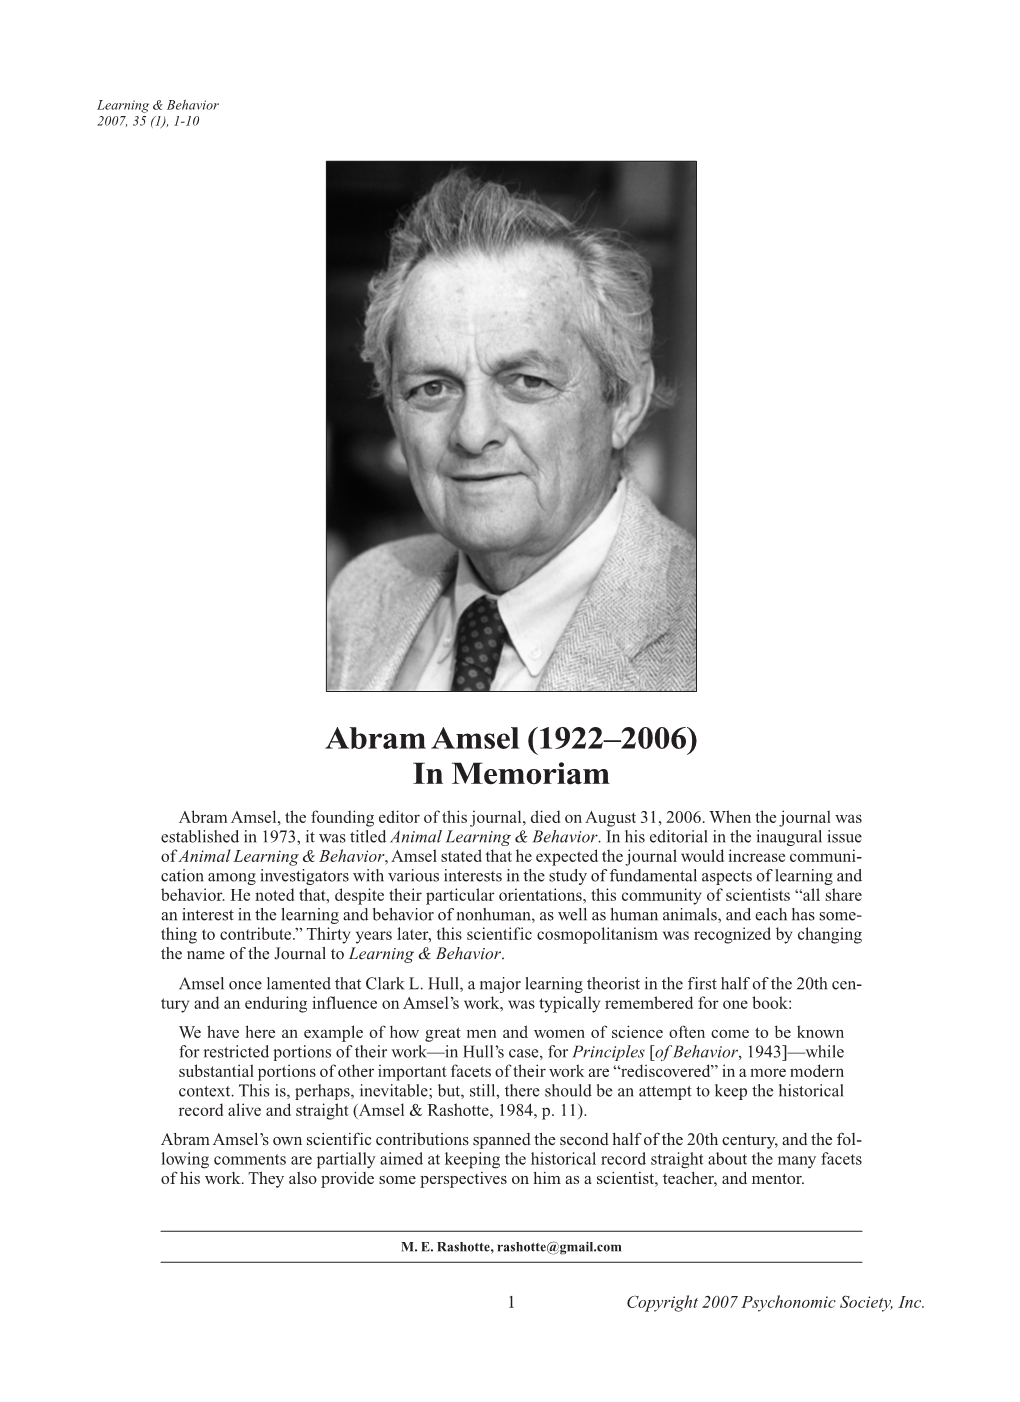 Abram Amsel (1922&#X2013;2006) in Memoriam